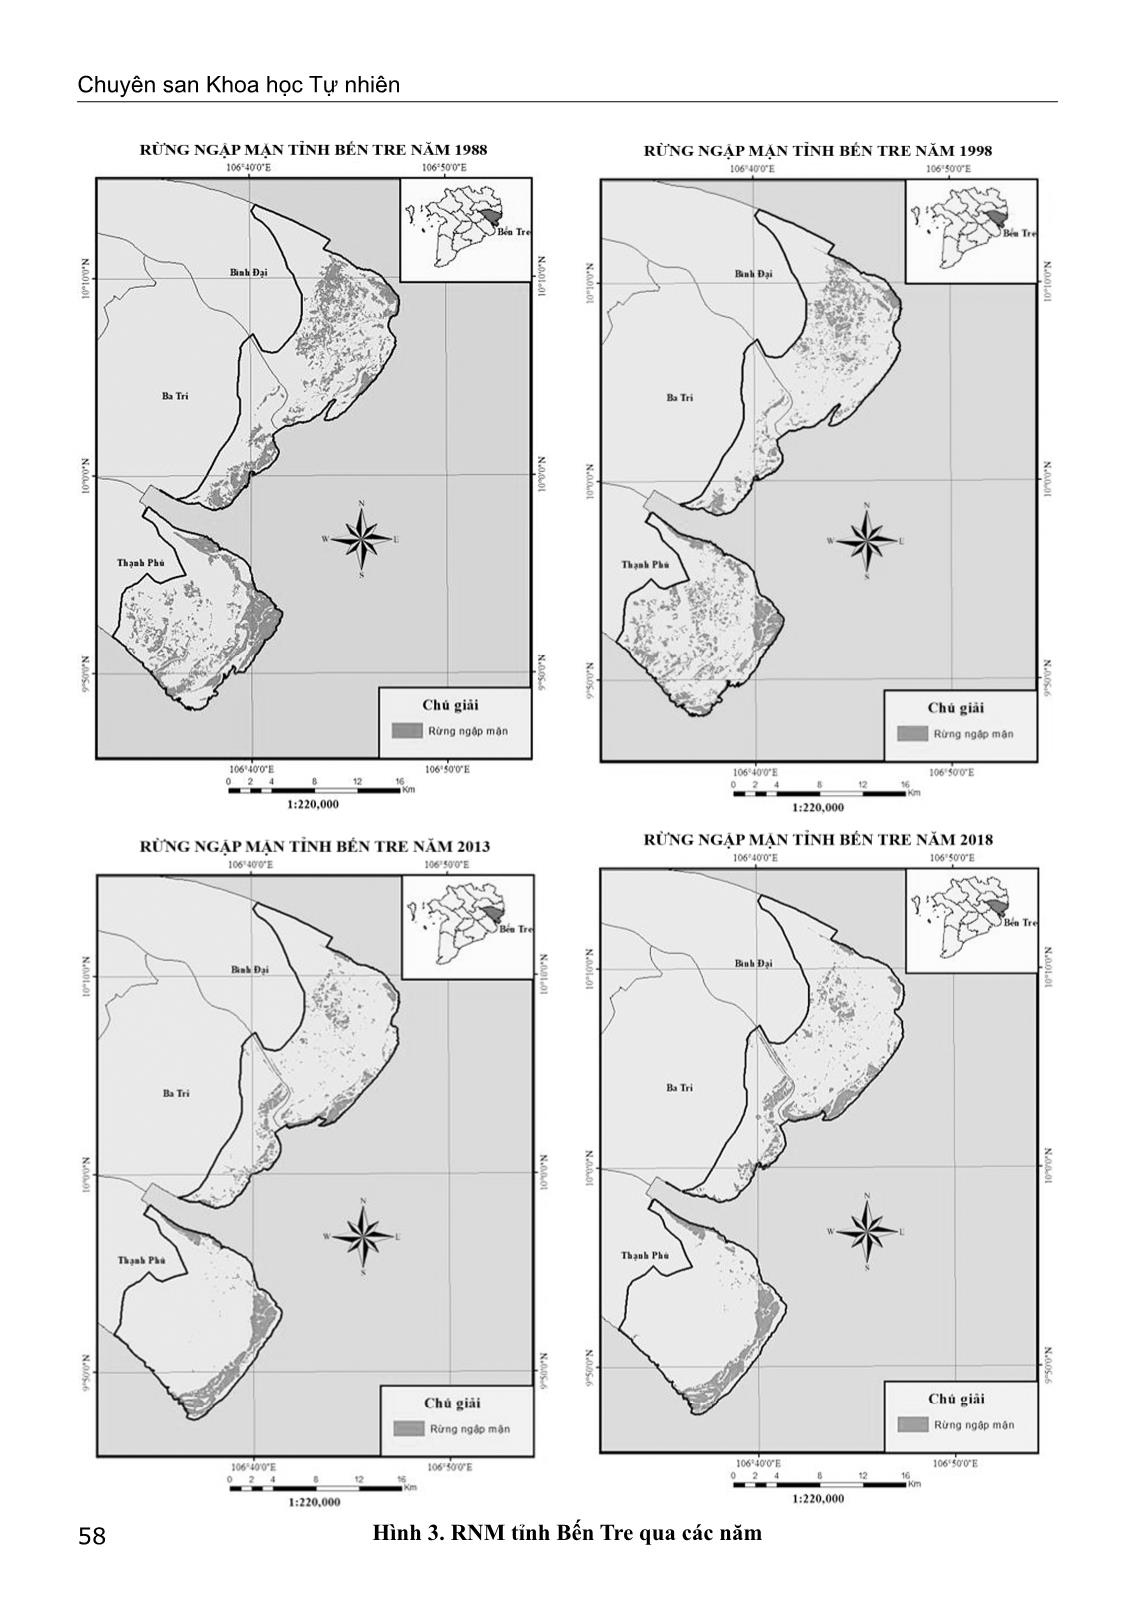 Đánh giá biến động rừng ngập mặn tỉnh Bến Tre trên cơ sở ảnh vệ tinh giai đoạn 1988-2018 trang 7